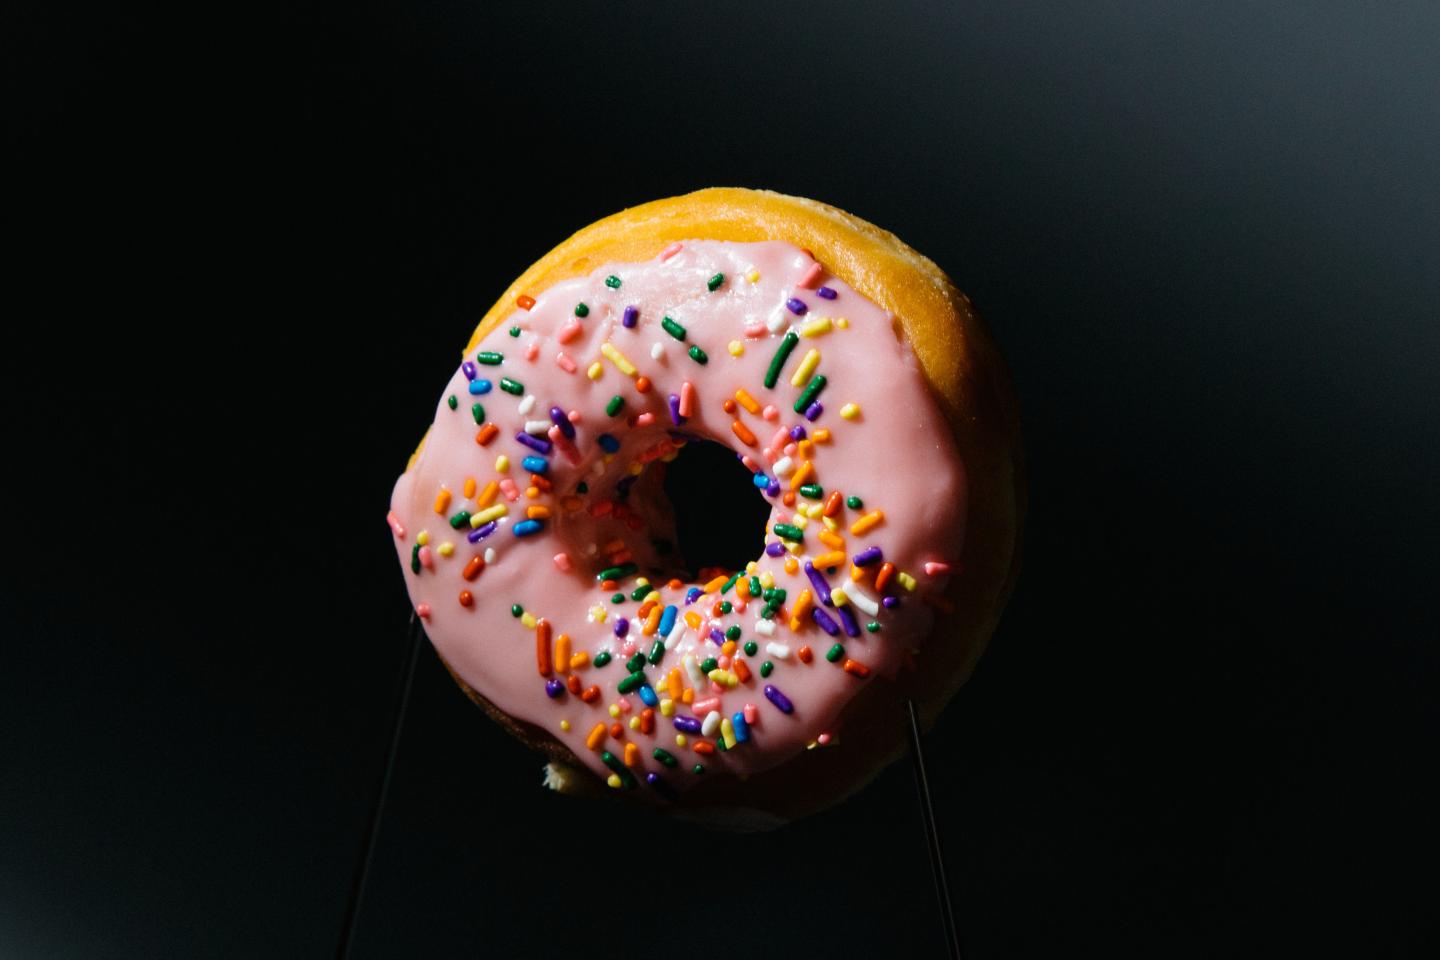 'Seeing' a Mathematical Doughnut